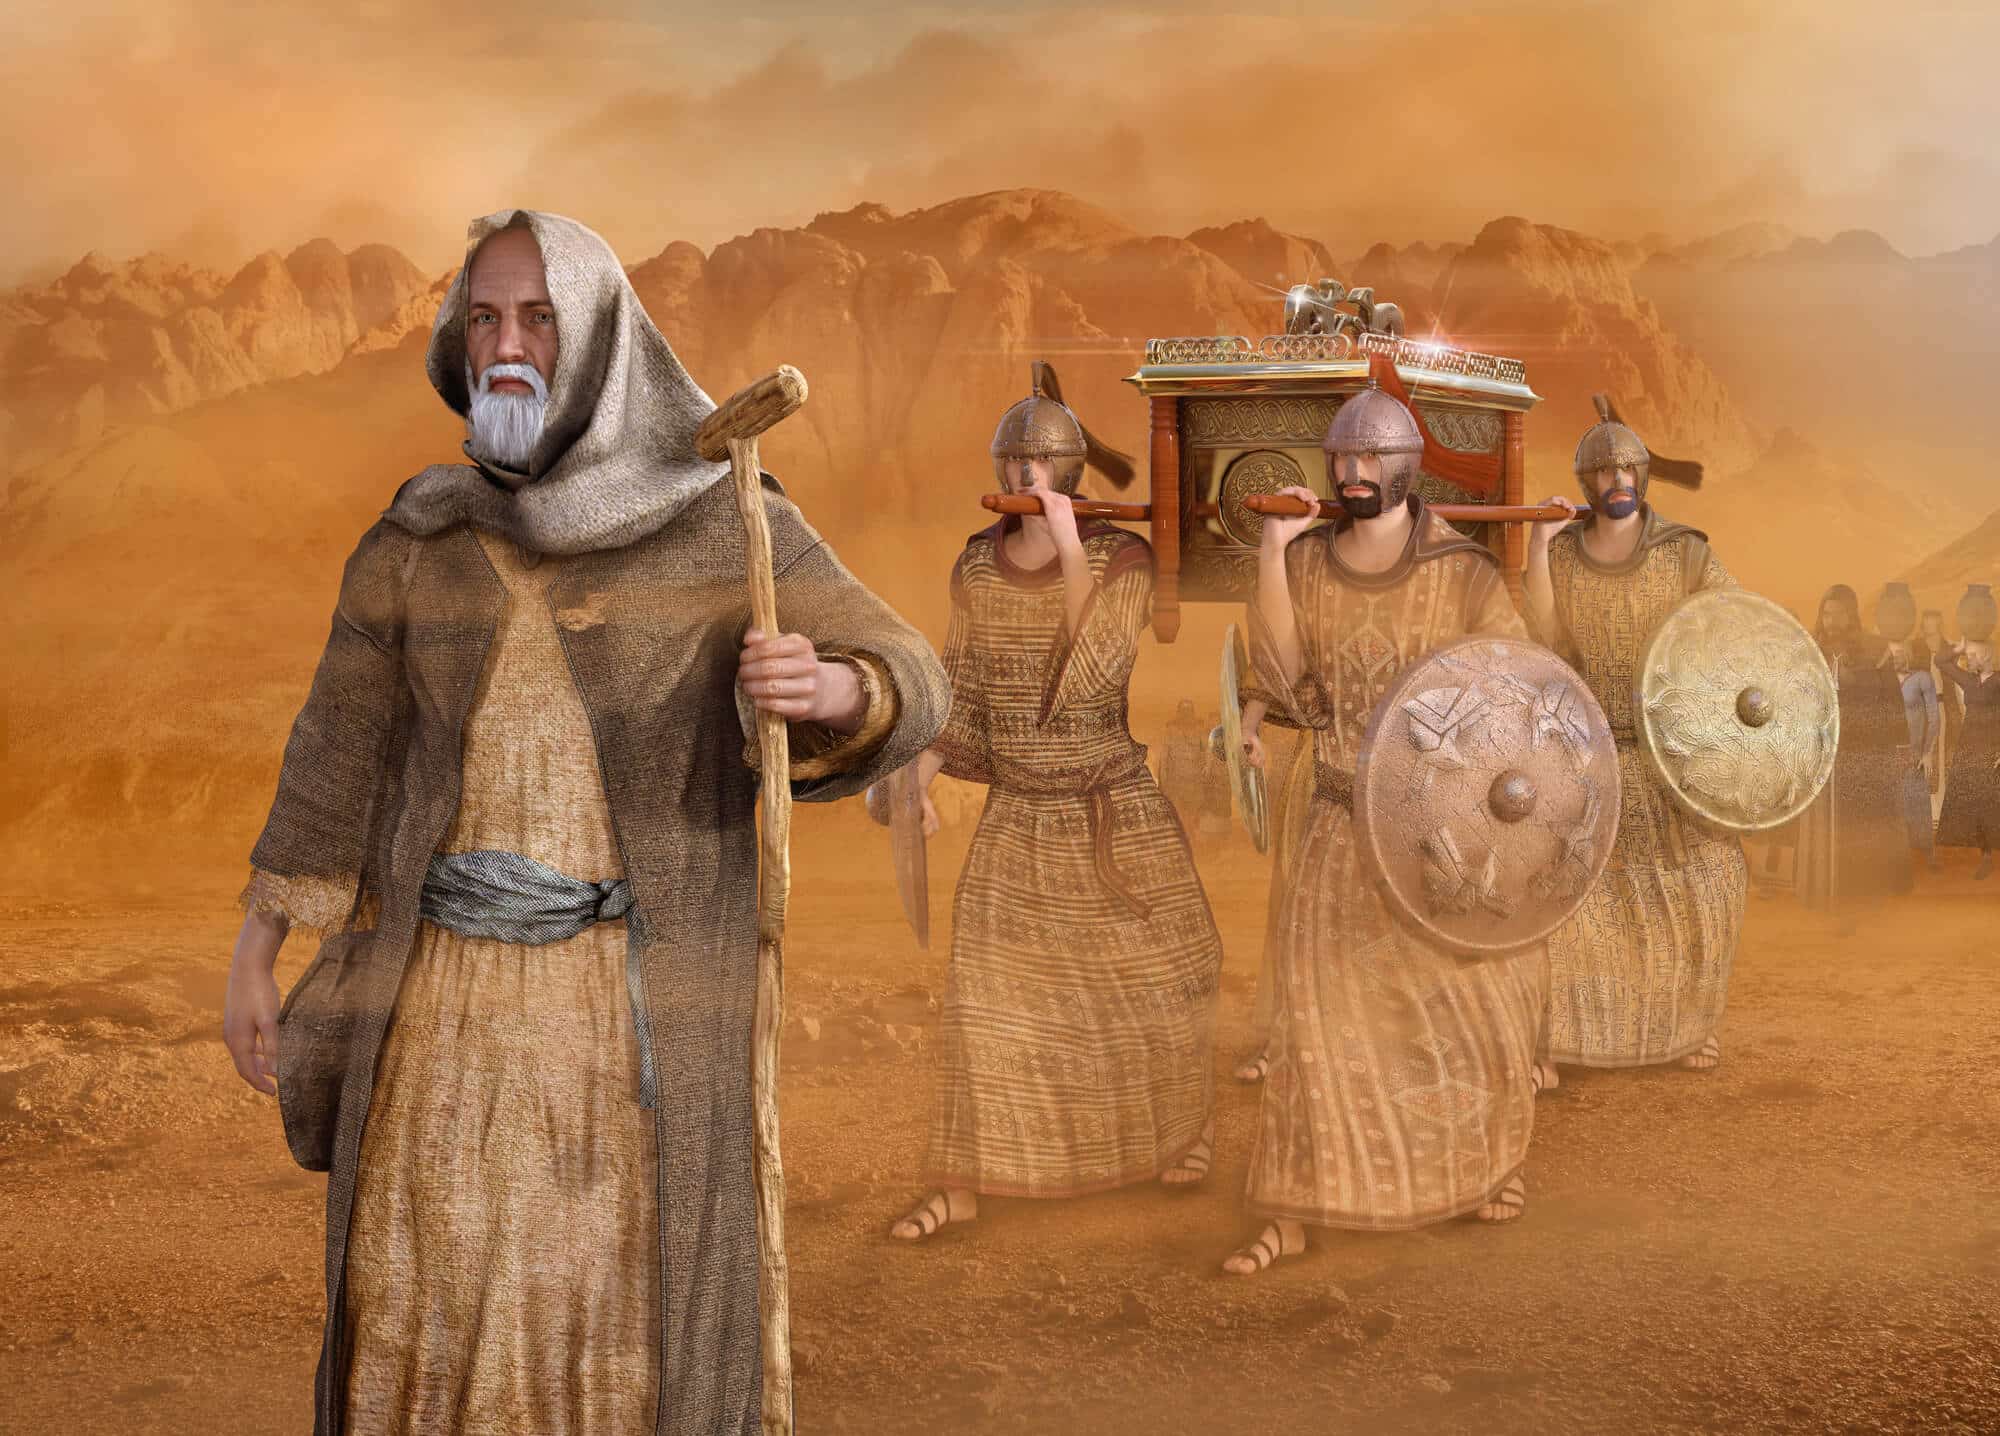 משה מוביל את בני ישראל במדבר. <a href="https://depositphotos.com. ">המחשה: depositphotos.com</a>